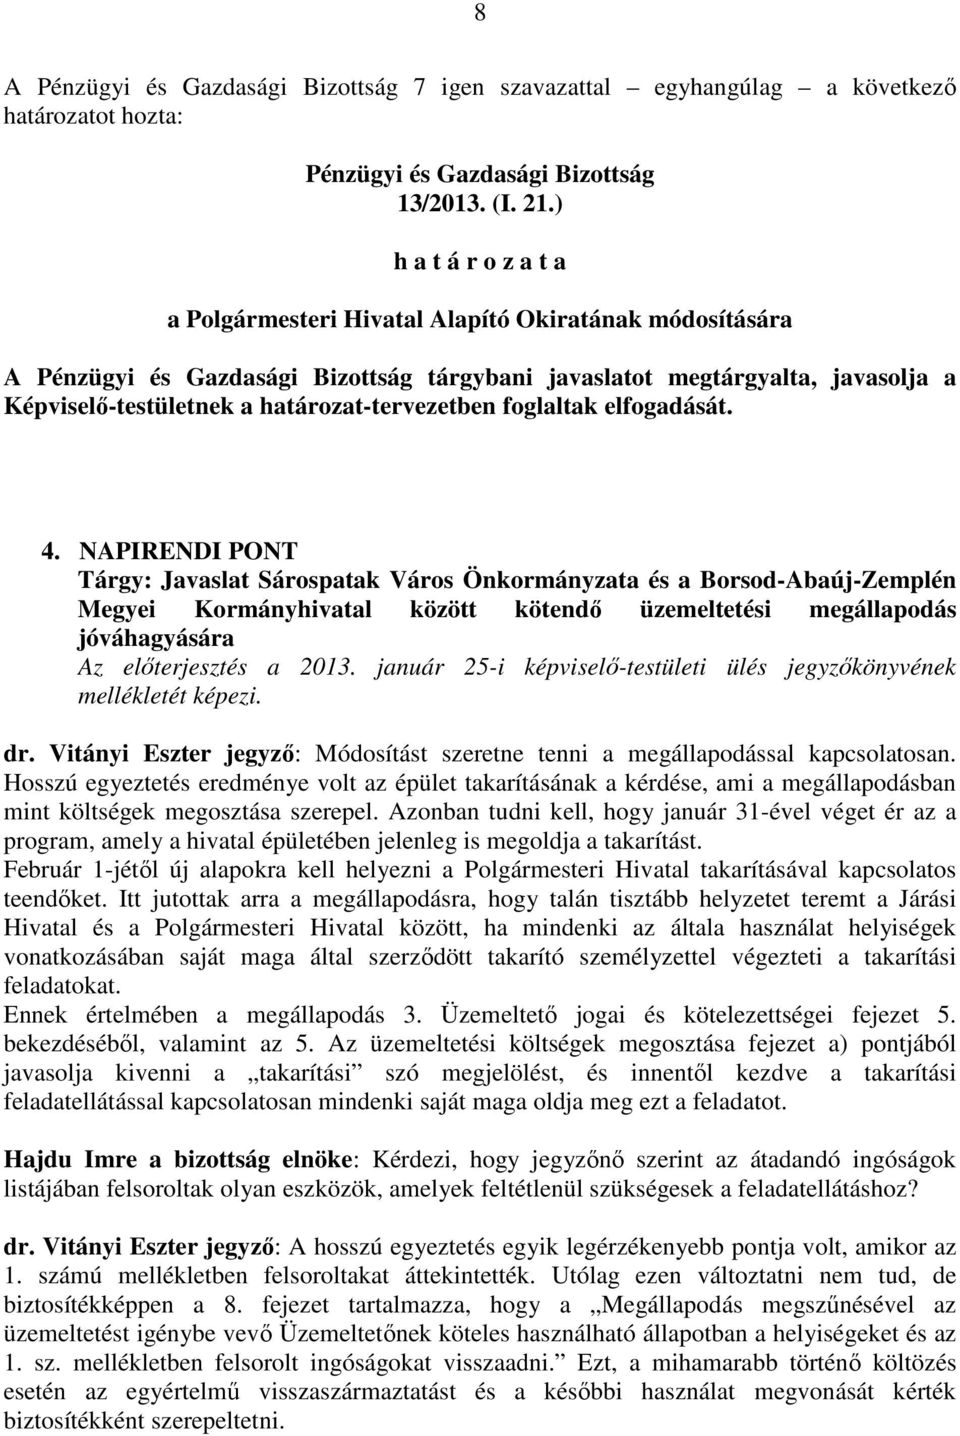 NAPIRENDI PONT Tárgy: Javaslat Sárospatak Város Önkormányzata és a Borsod-Abaúj-Zemplén Megyei Kormányhivatal között kötendő üzemeltetési megállapodás jóváhagyására Az előterjesztés a 2013.